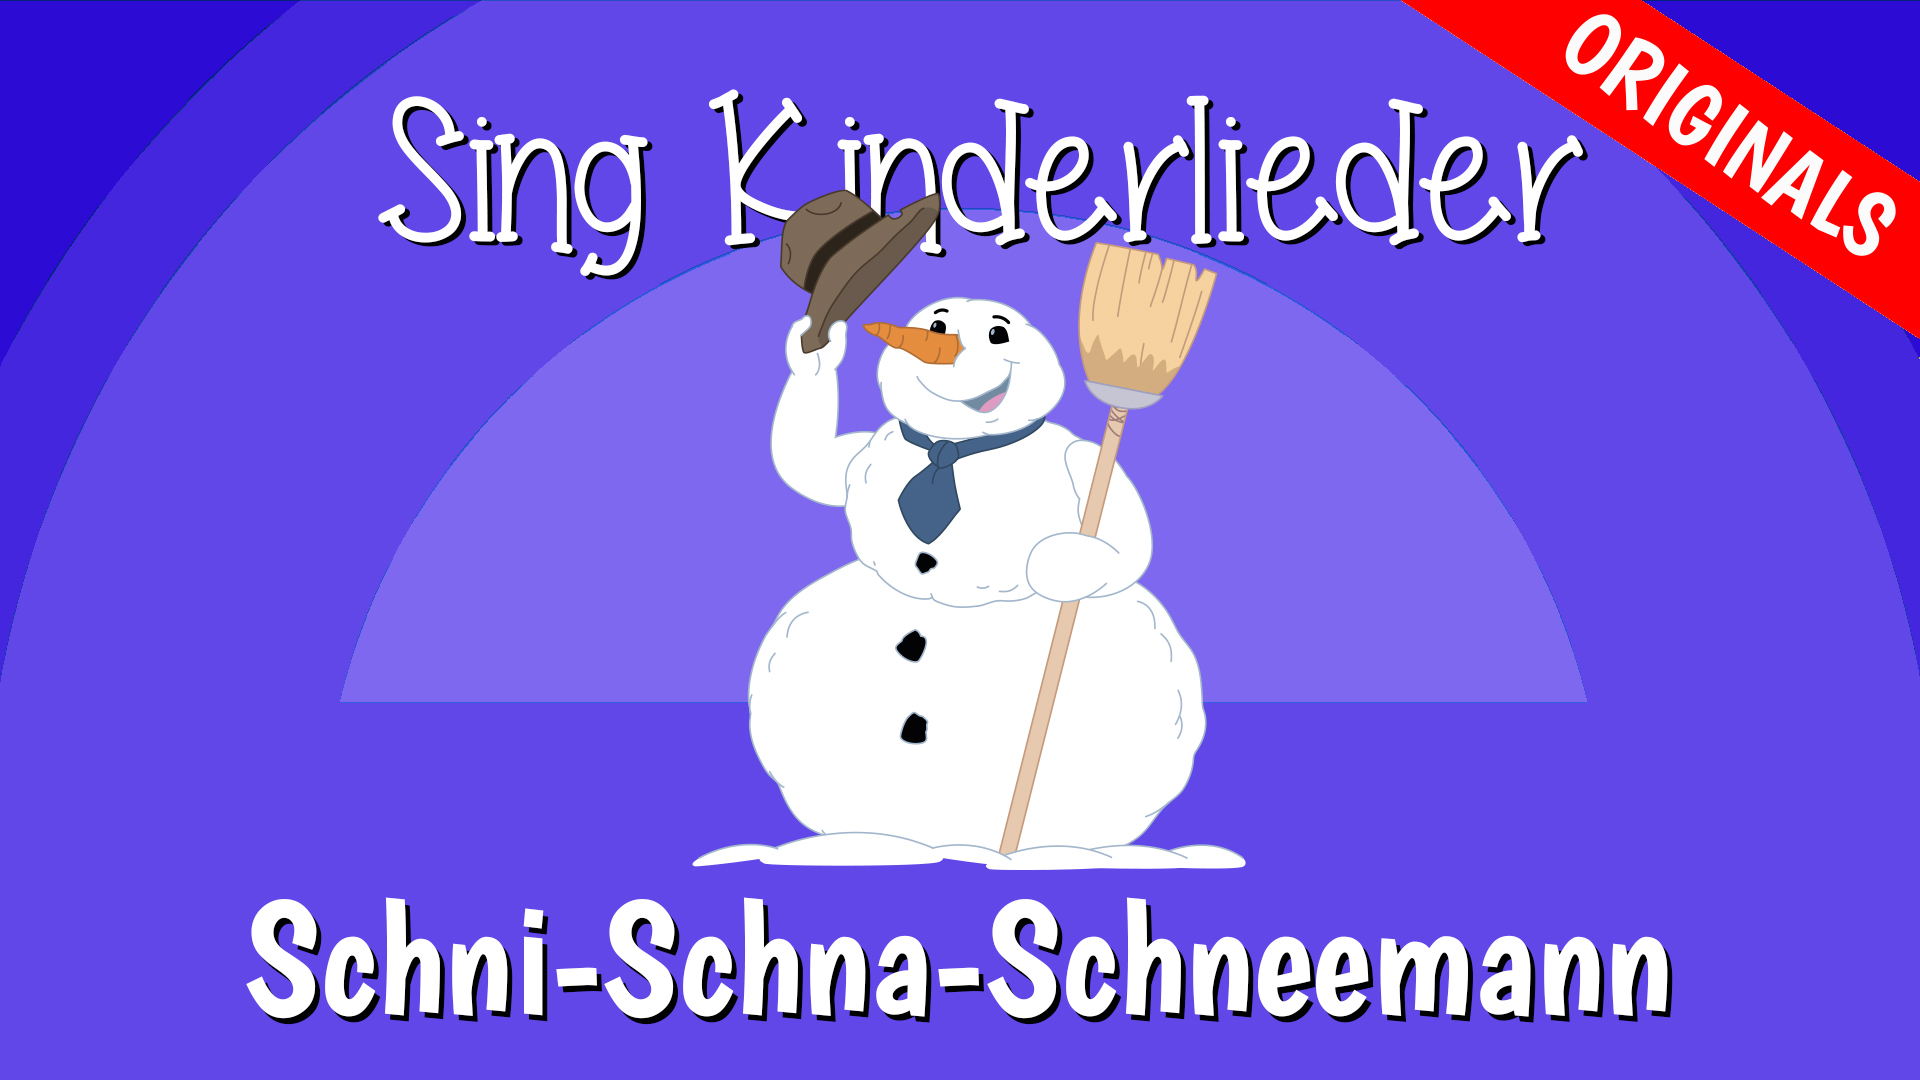 Schni-Schna-Schneemann